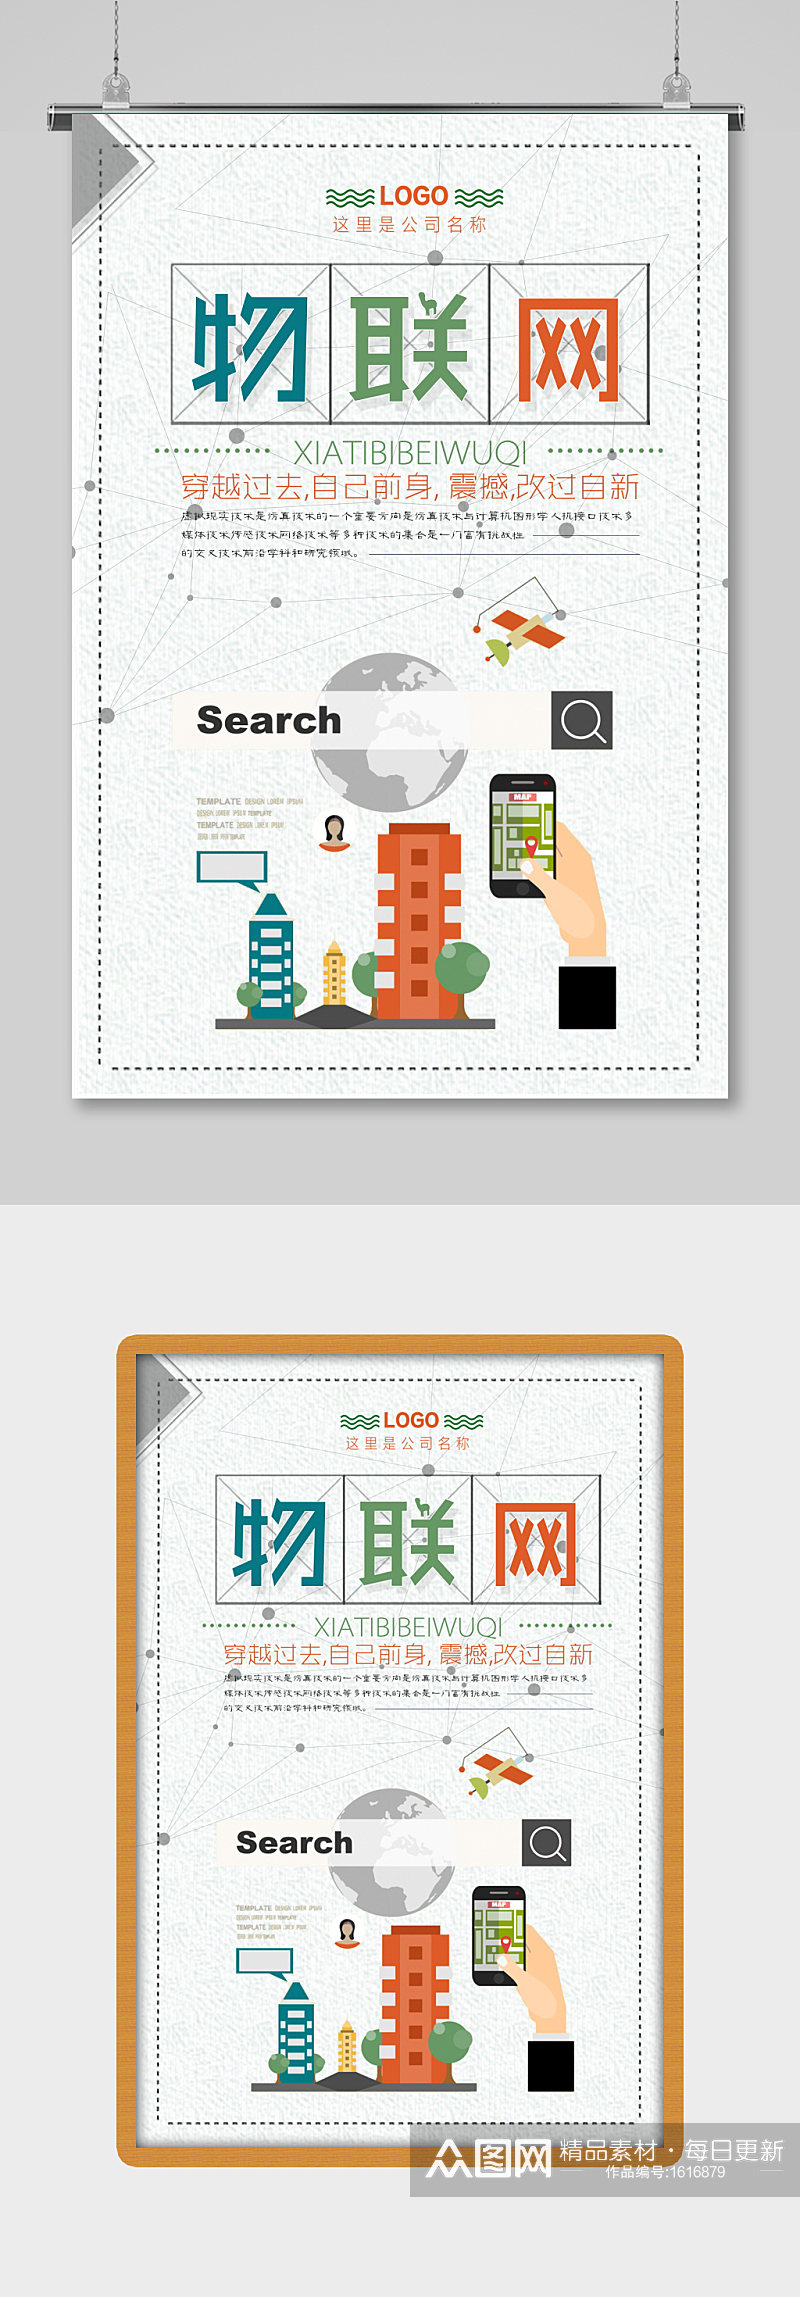 创意简洁物联网海报设计素材